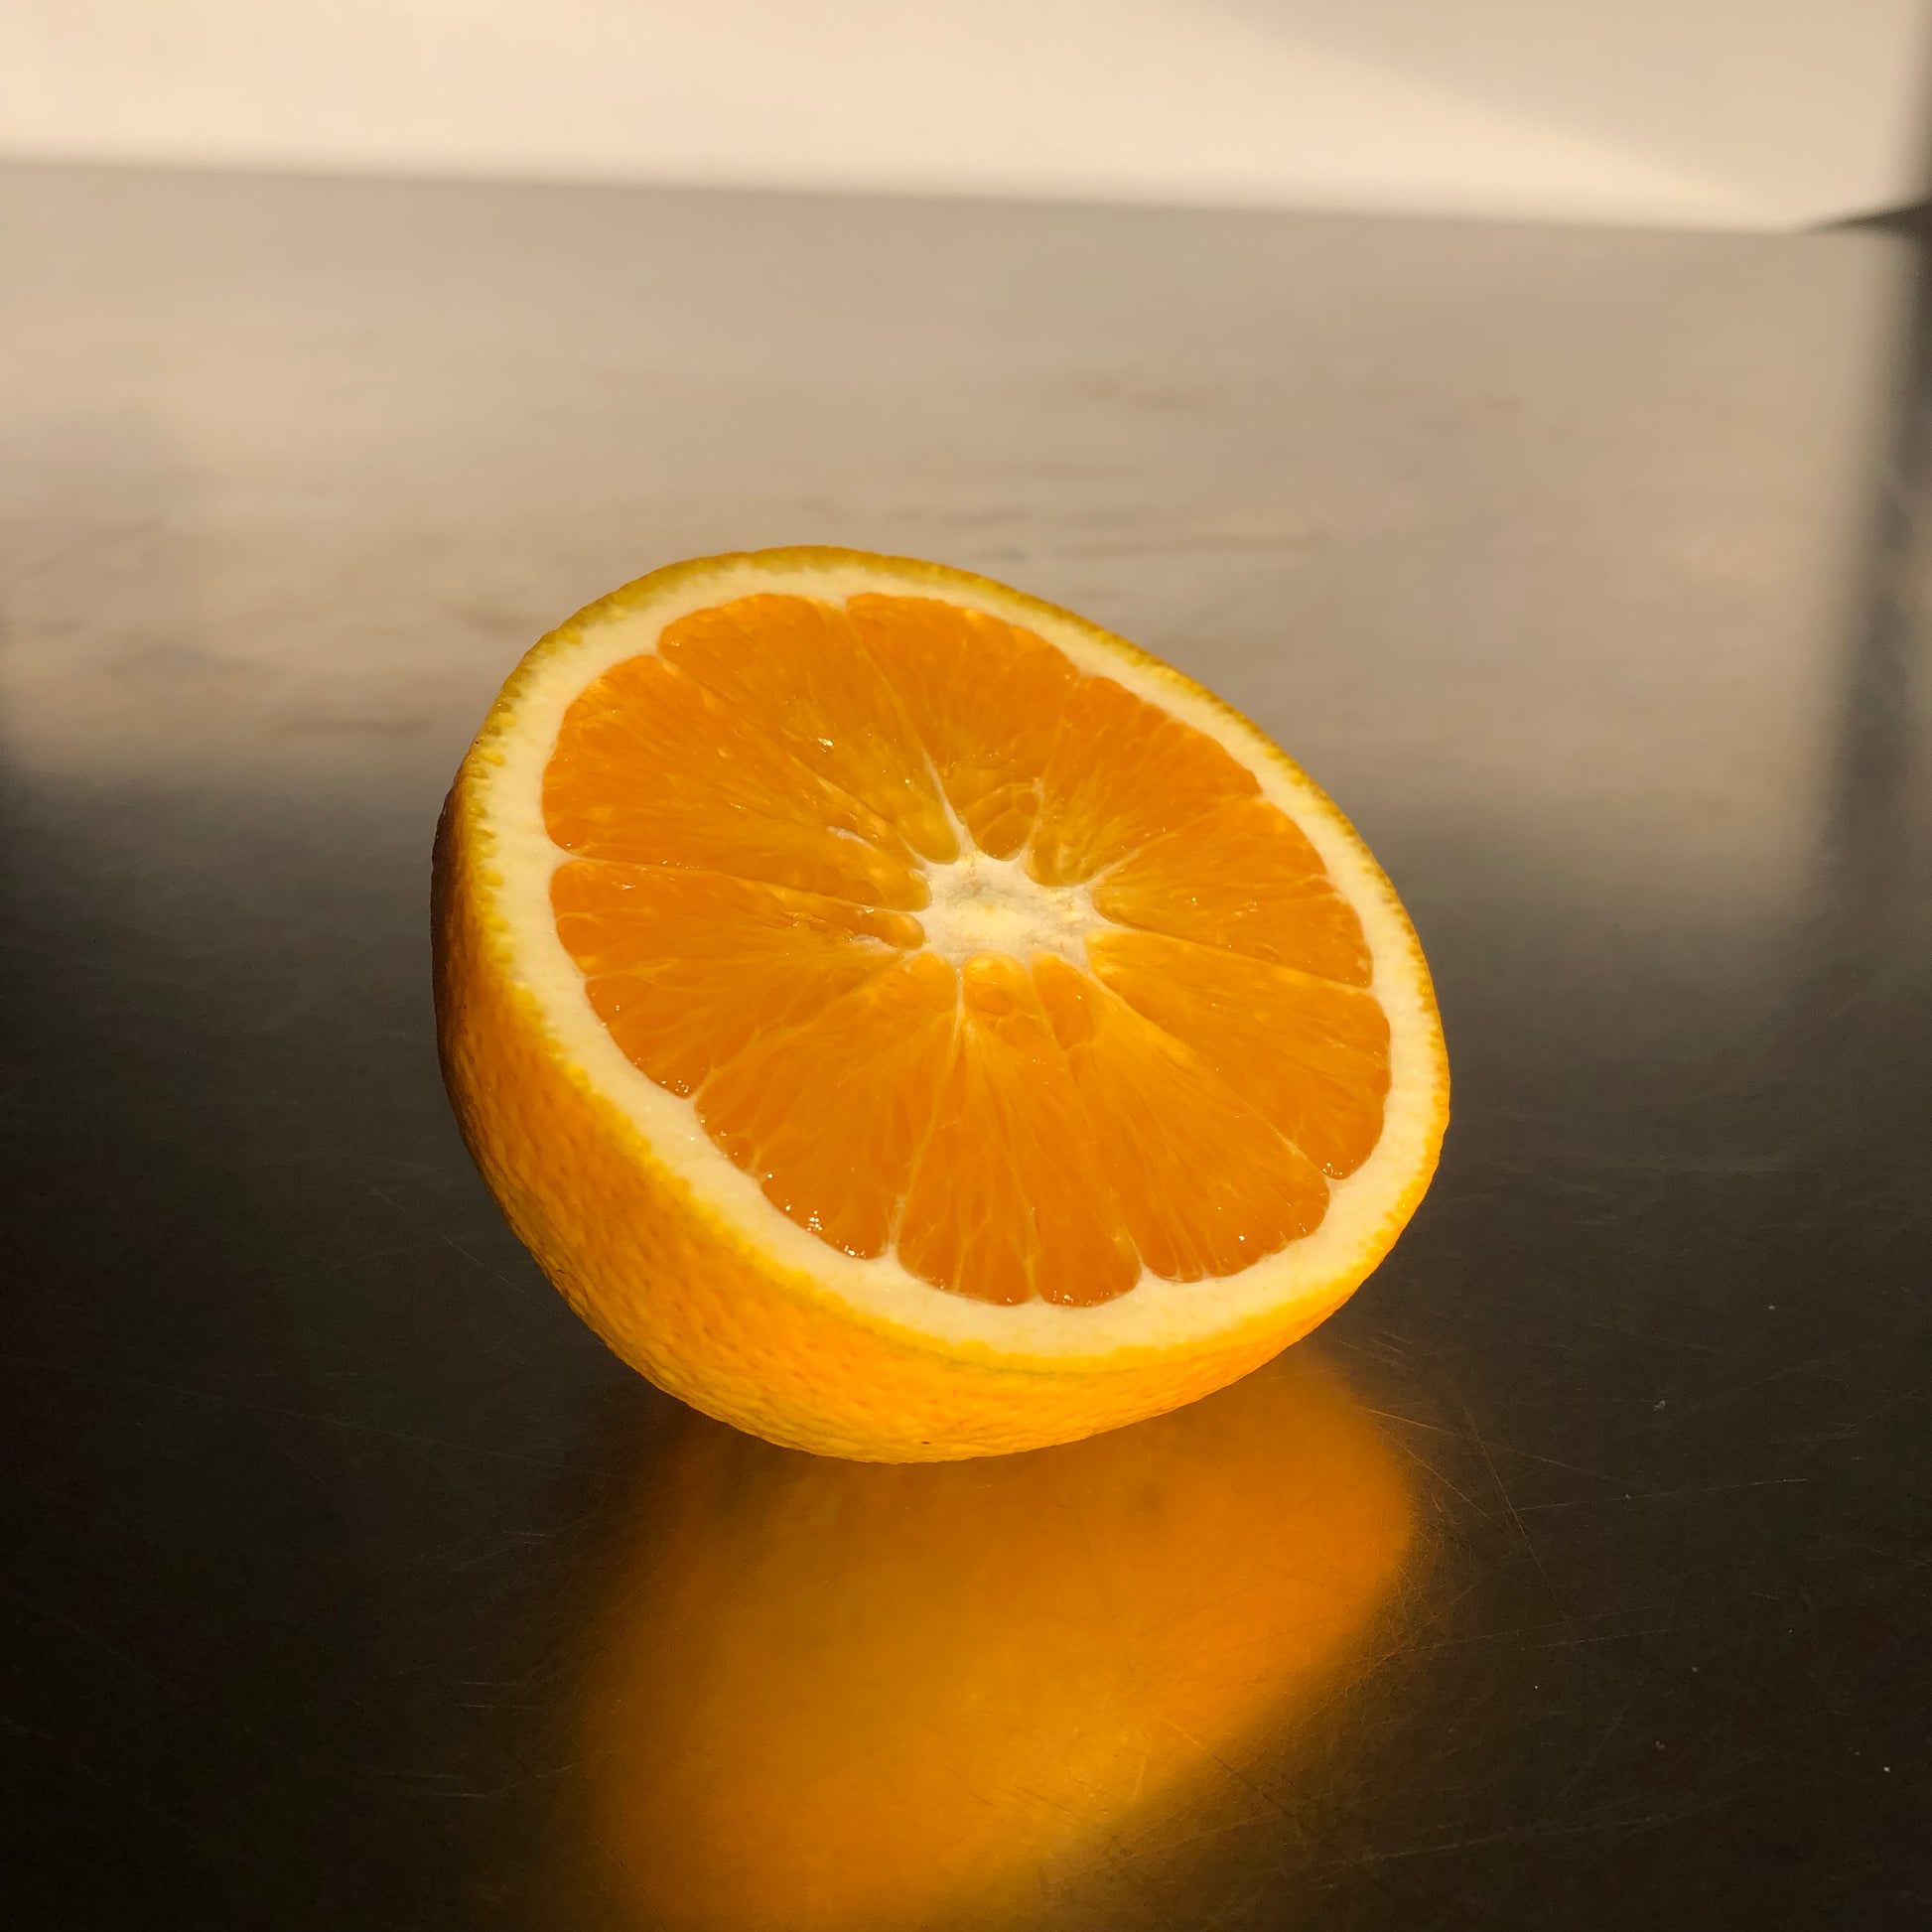 Confiture Artisanale d'Orange - Délices d'Epicure - L'Orange ( du Portugal )